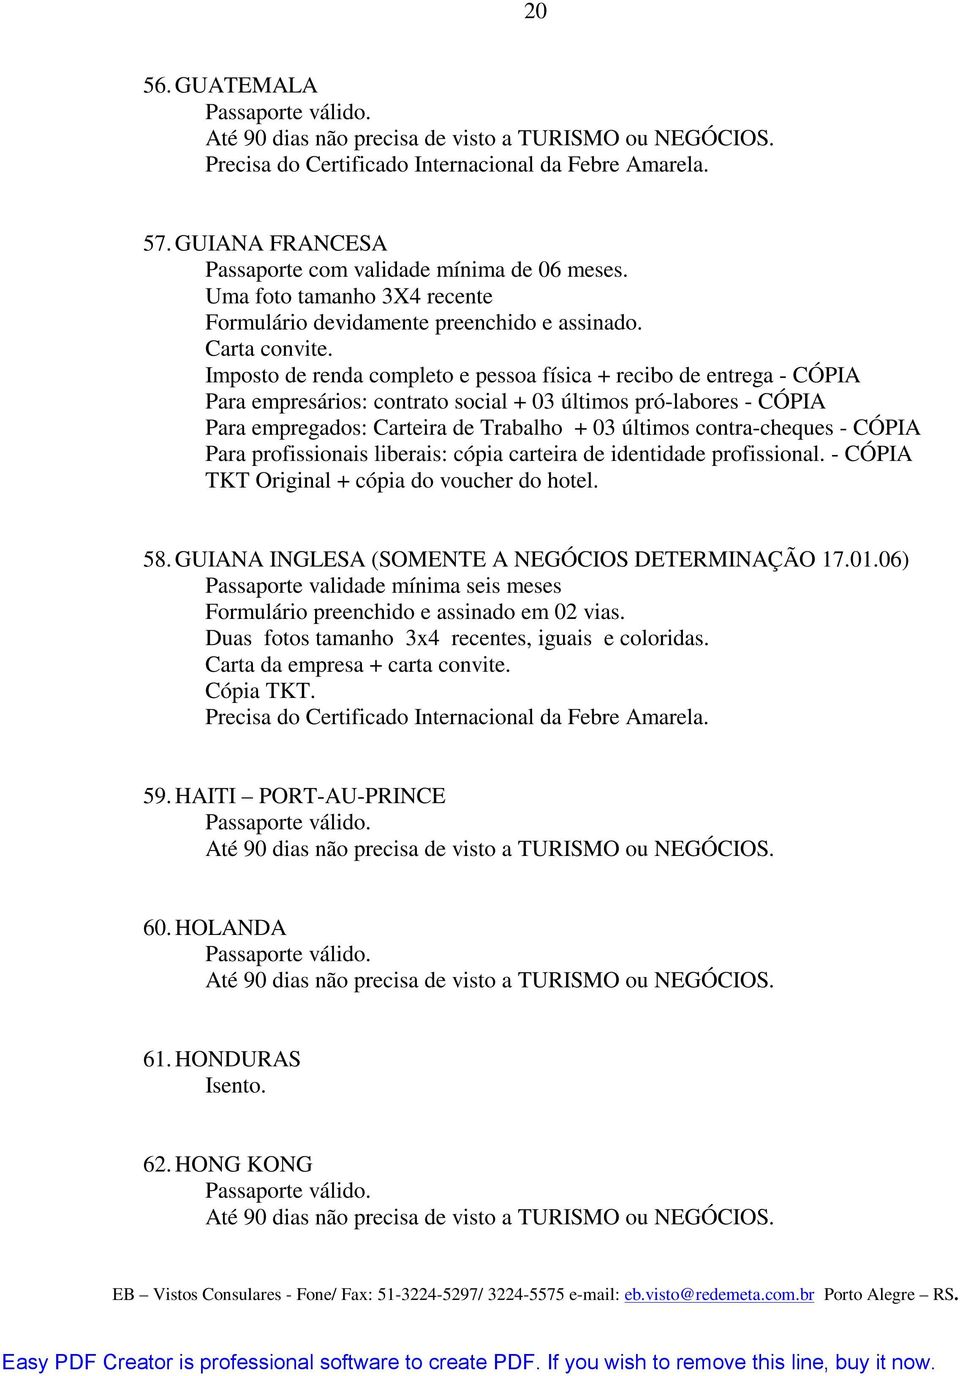 MANUAL DE VISTOS CONSULARES - PDF Free Download